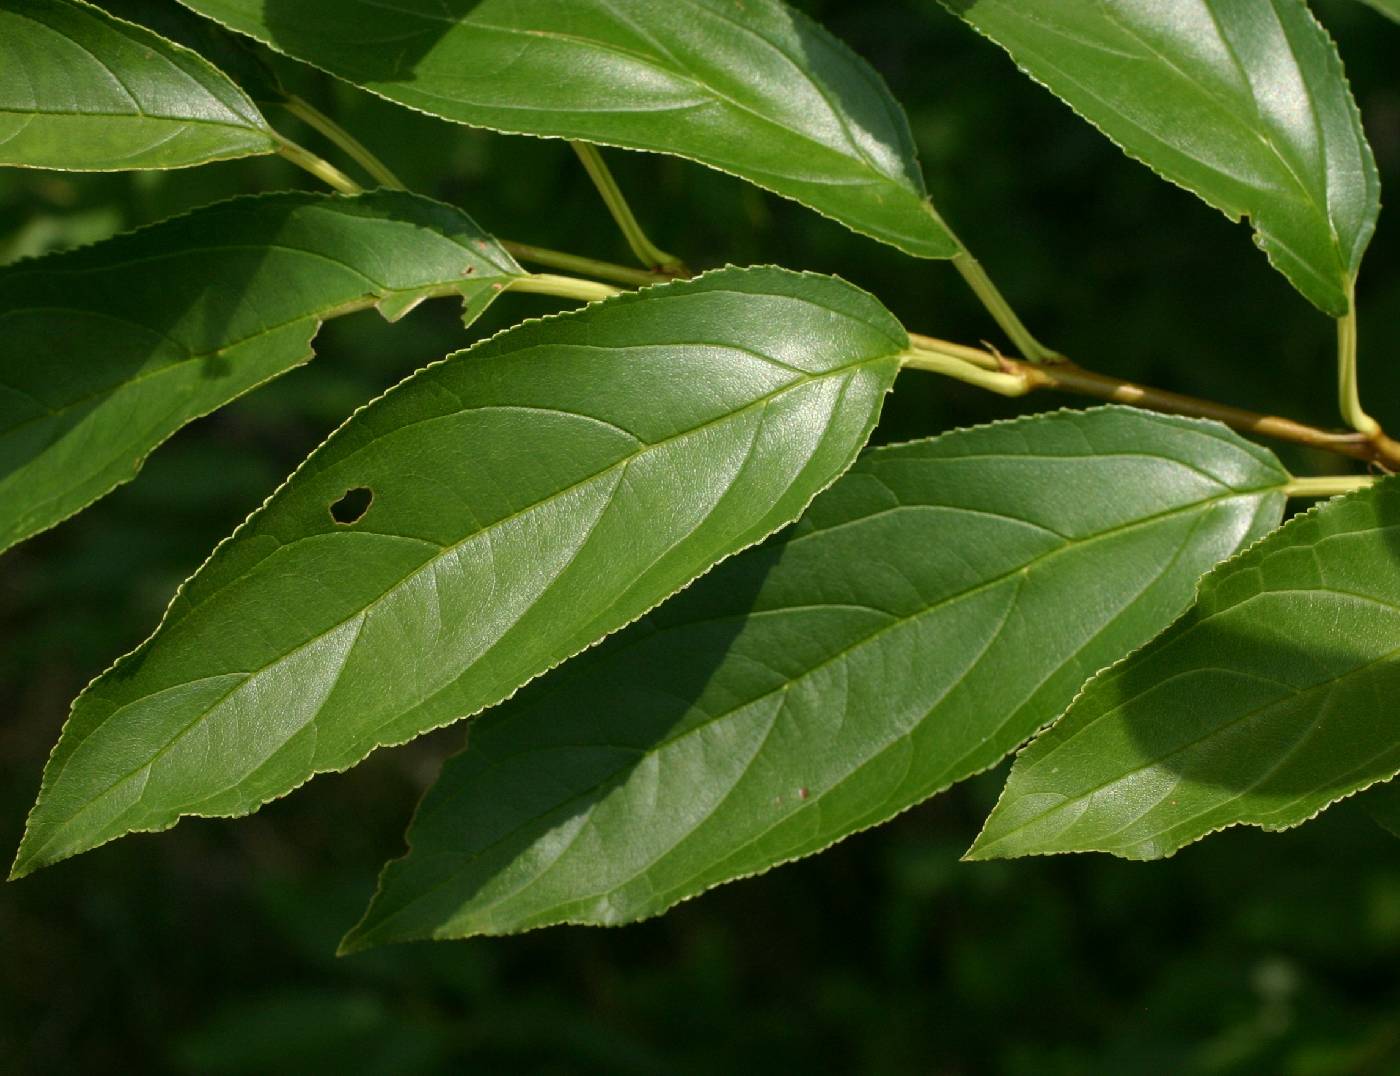 Rhamnus davurica subsp. davurica image